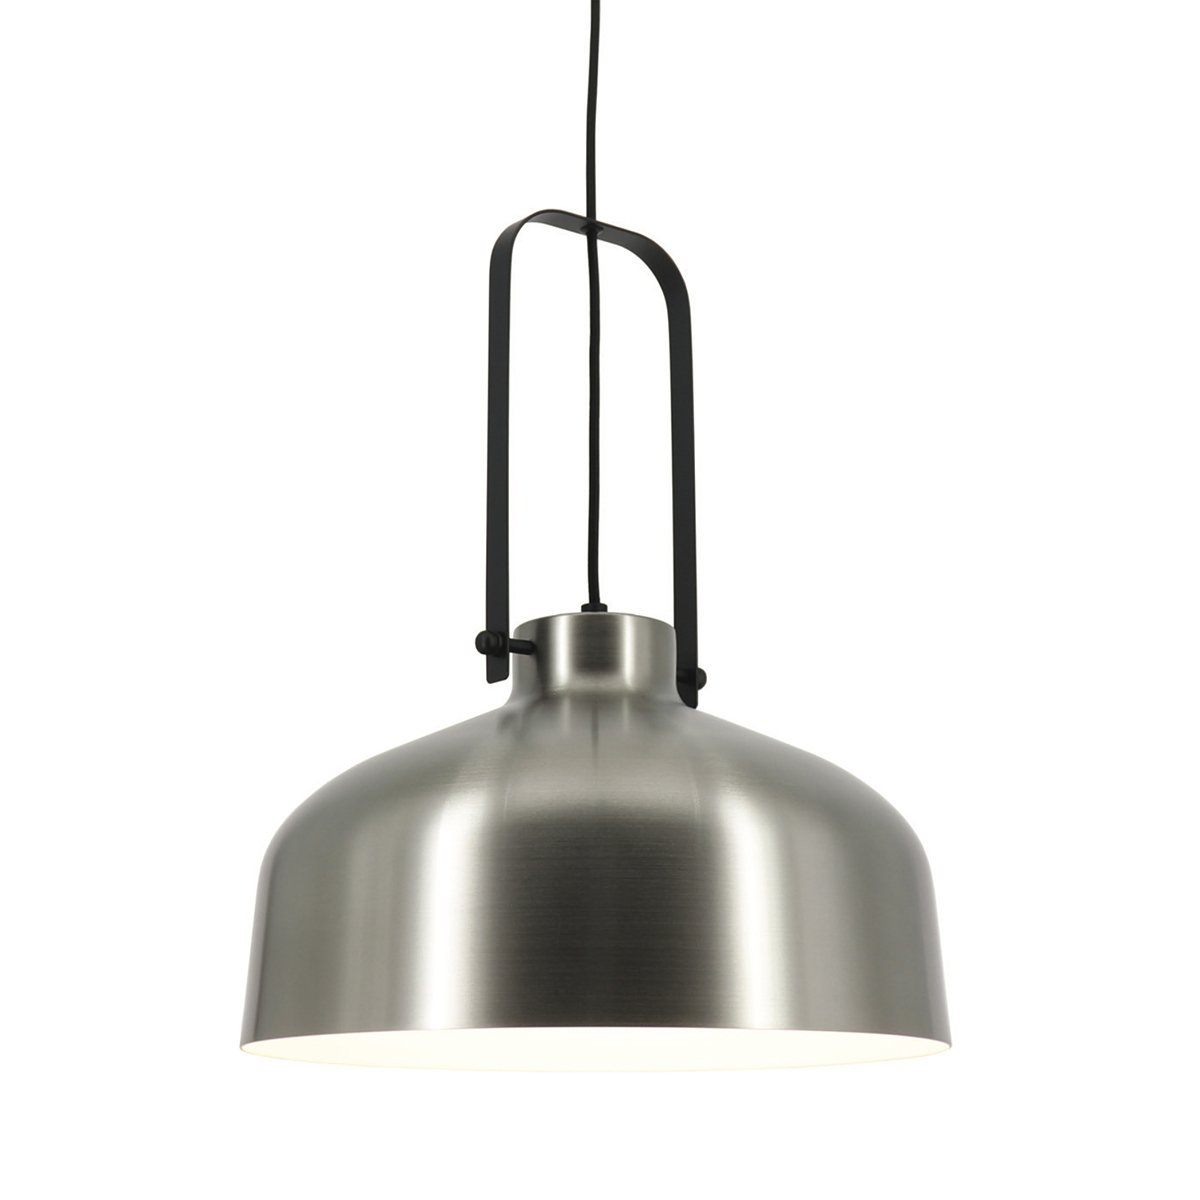 Fabrik lampe industriell metall Vaglia - Ø 37.5 cm